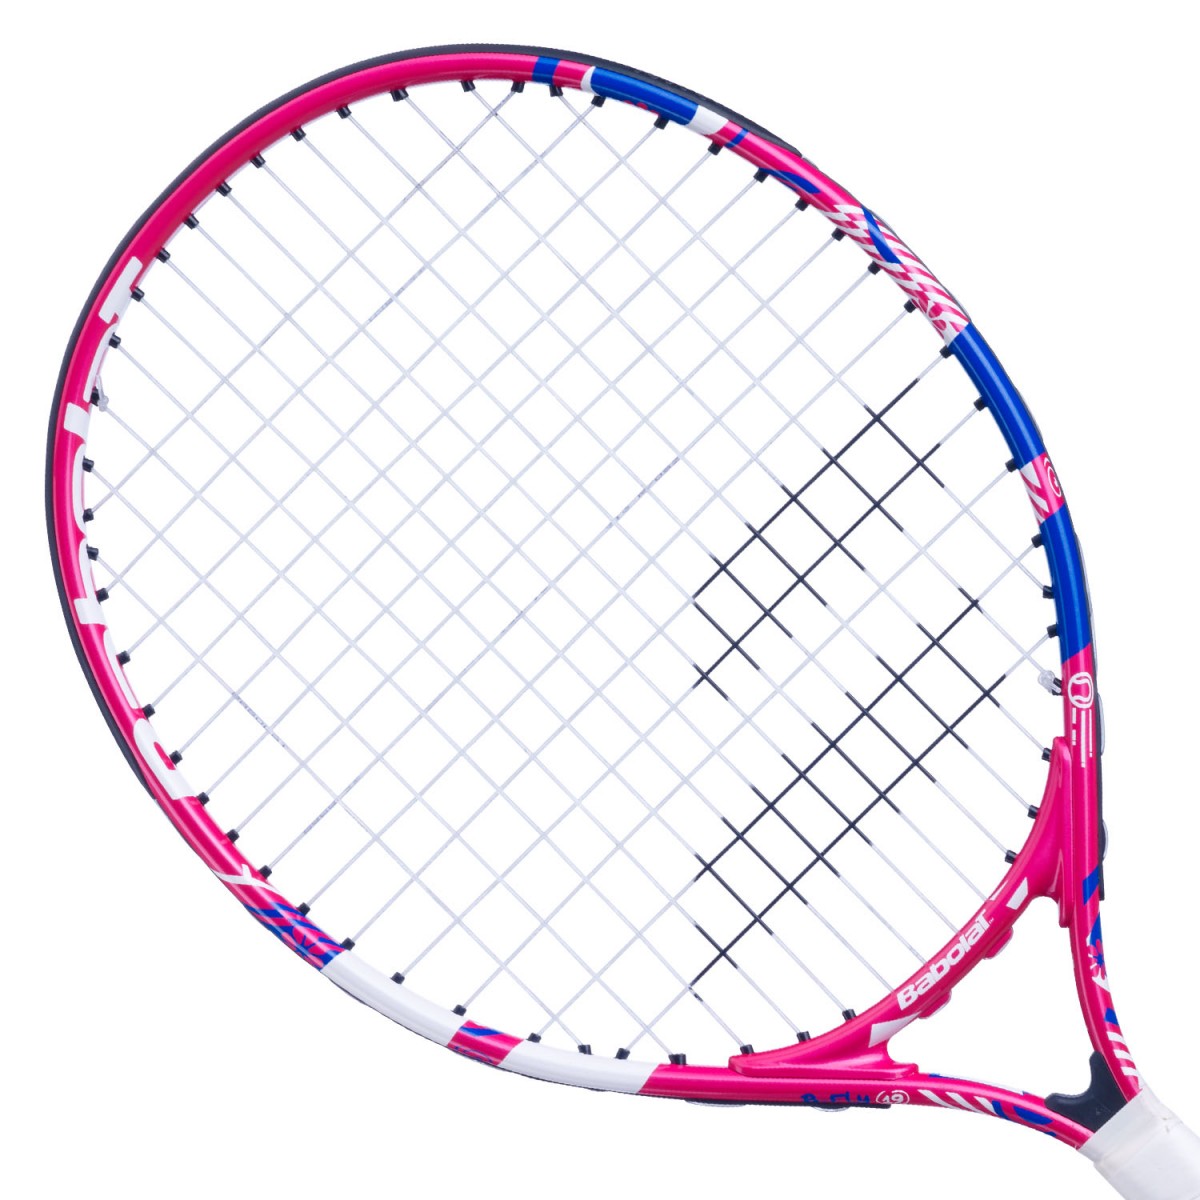 Теннисная ракетка детская Babolat B'Fly (19